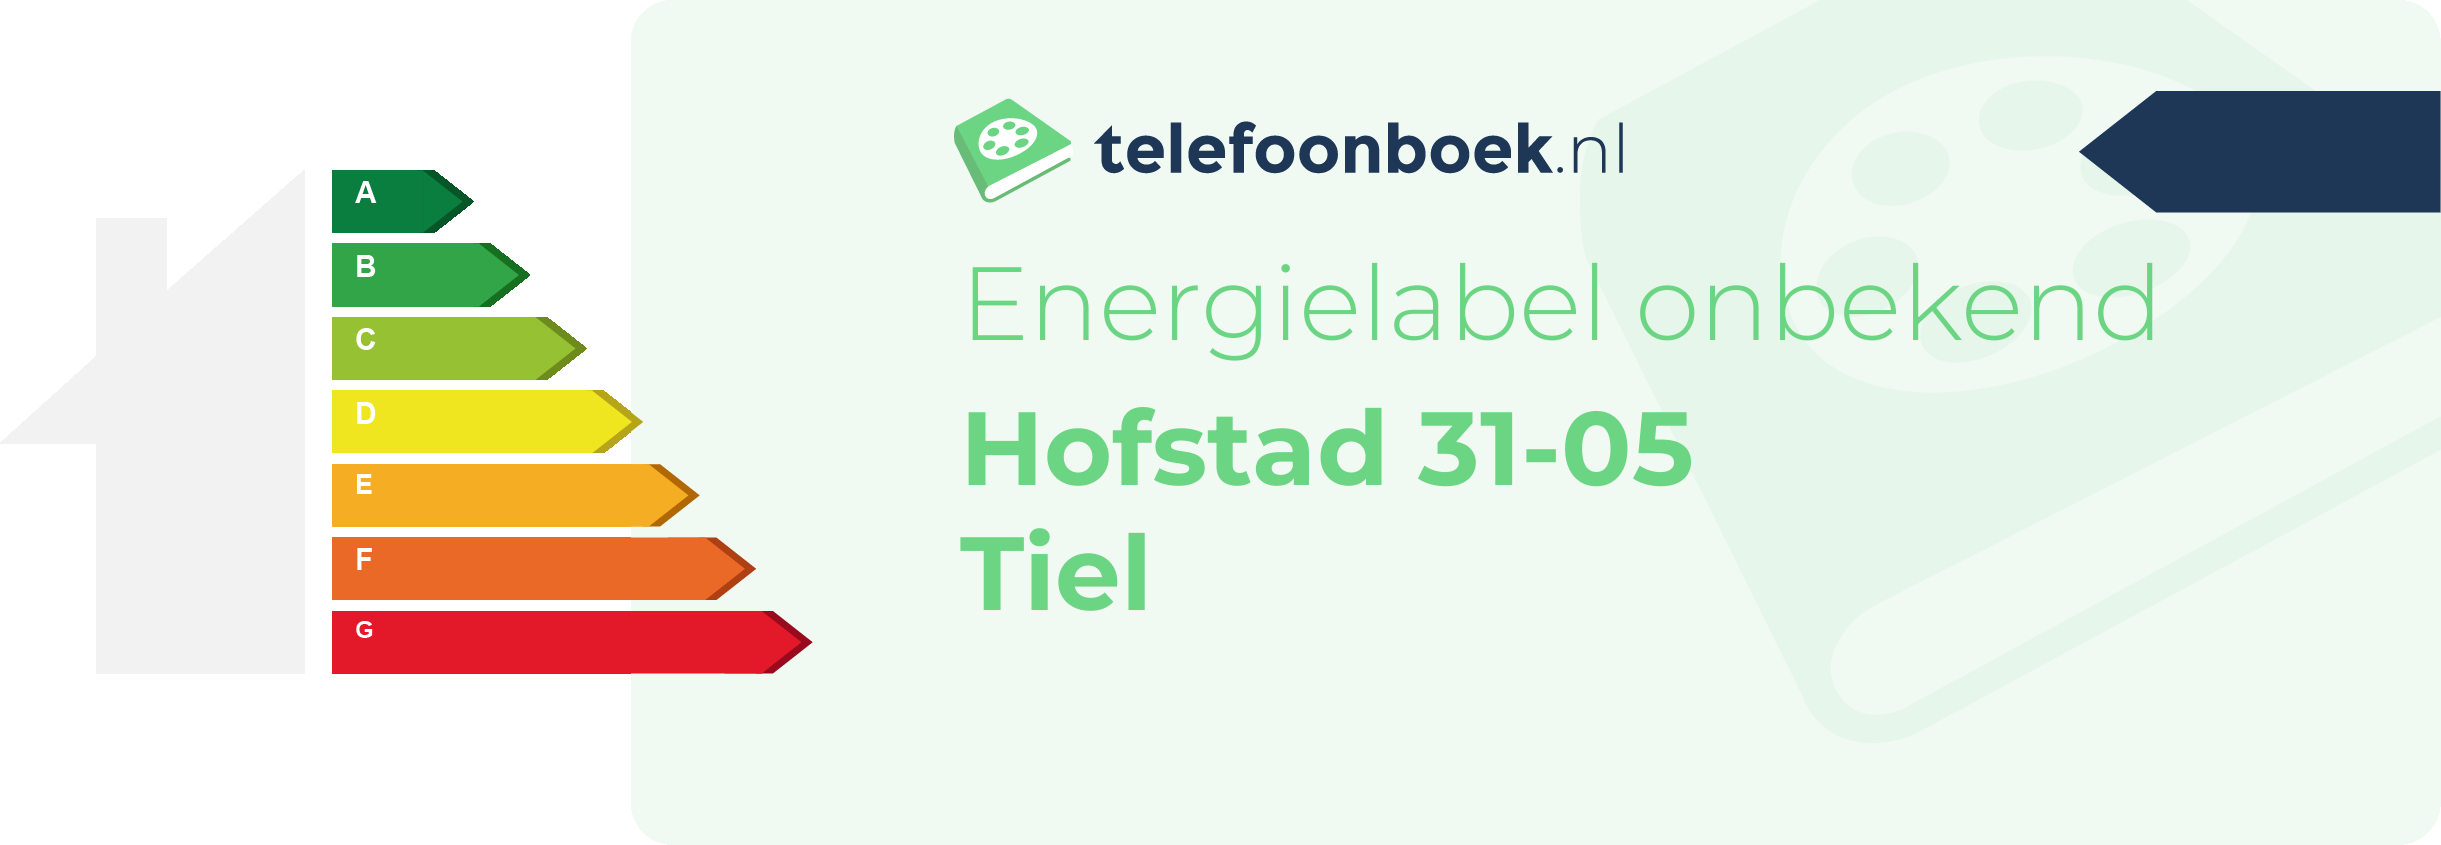 Energielabel Hofstad 31-05 Tiel